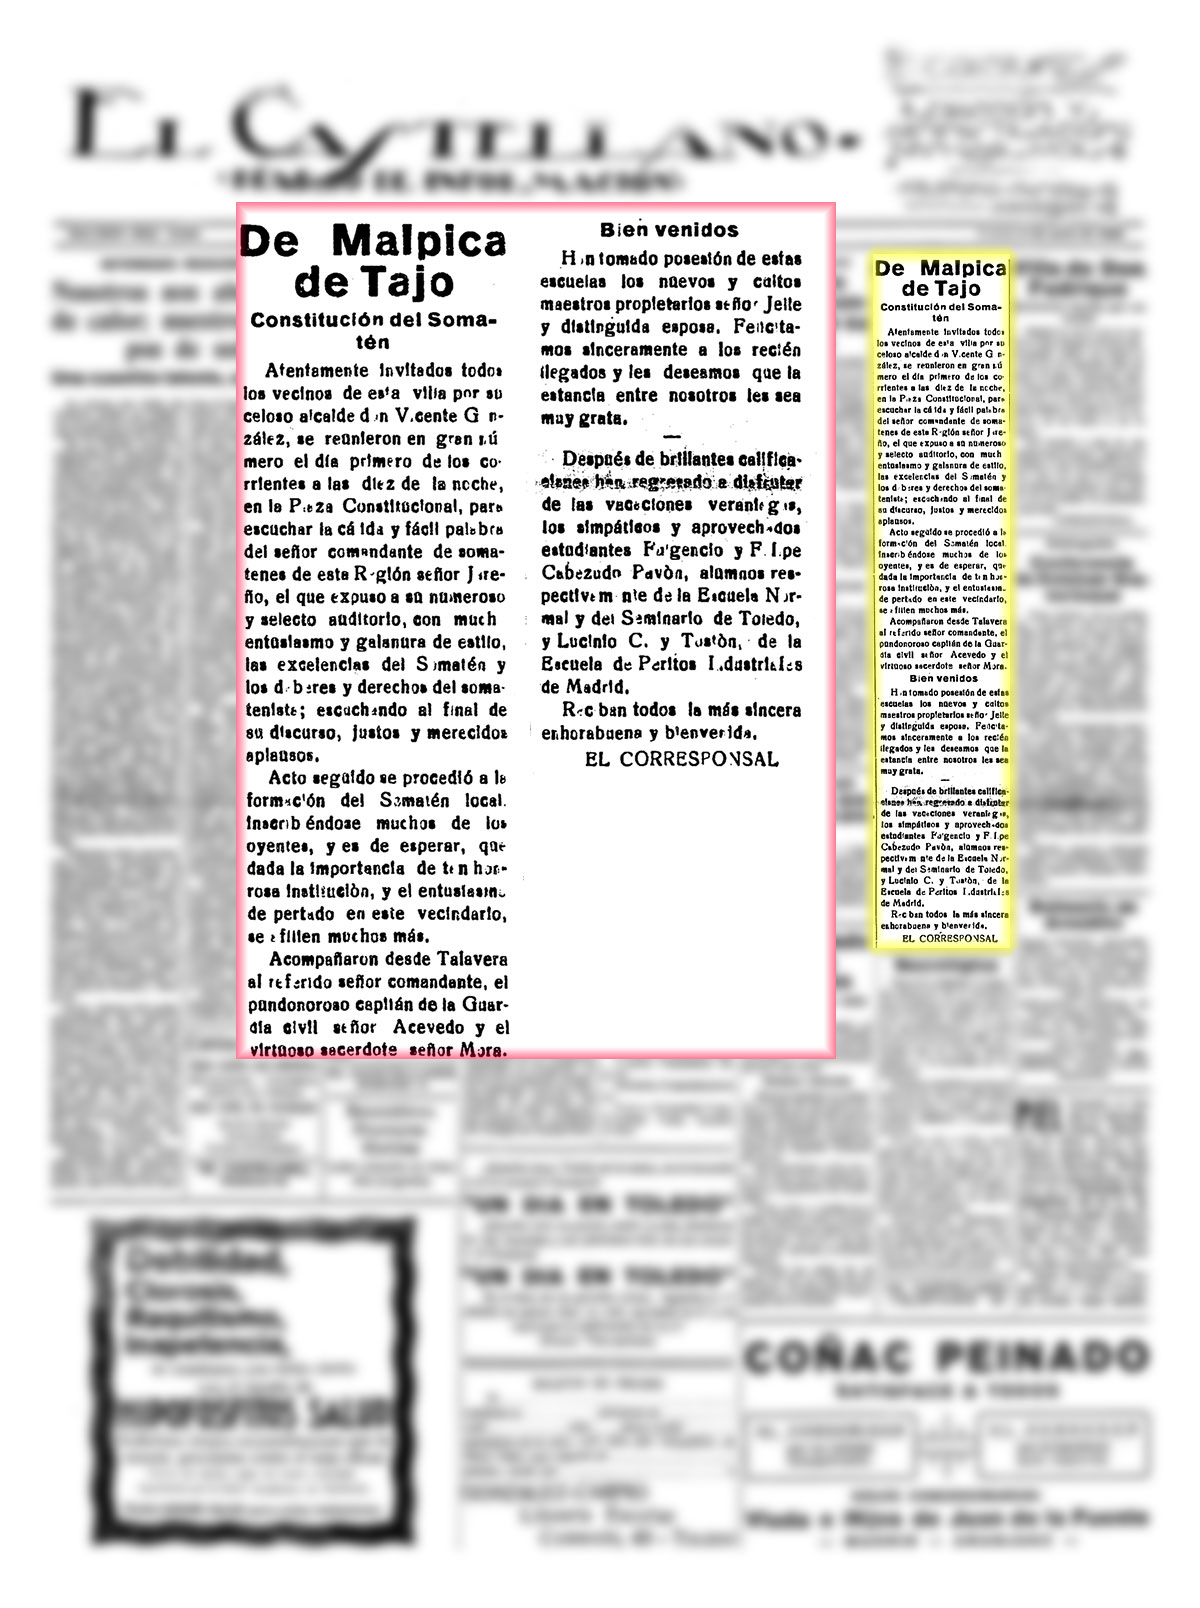 Constitución del somatén en Malpica de Tajo. El Castellano. 5/7/1928, n.º 6.045